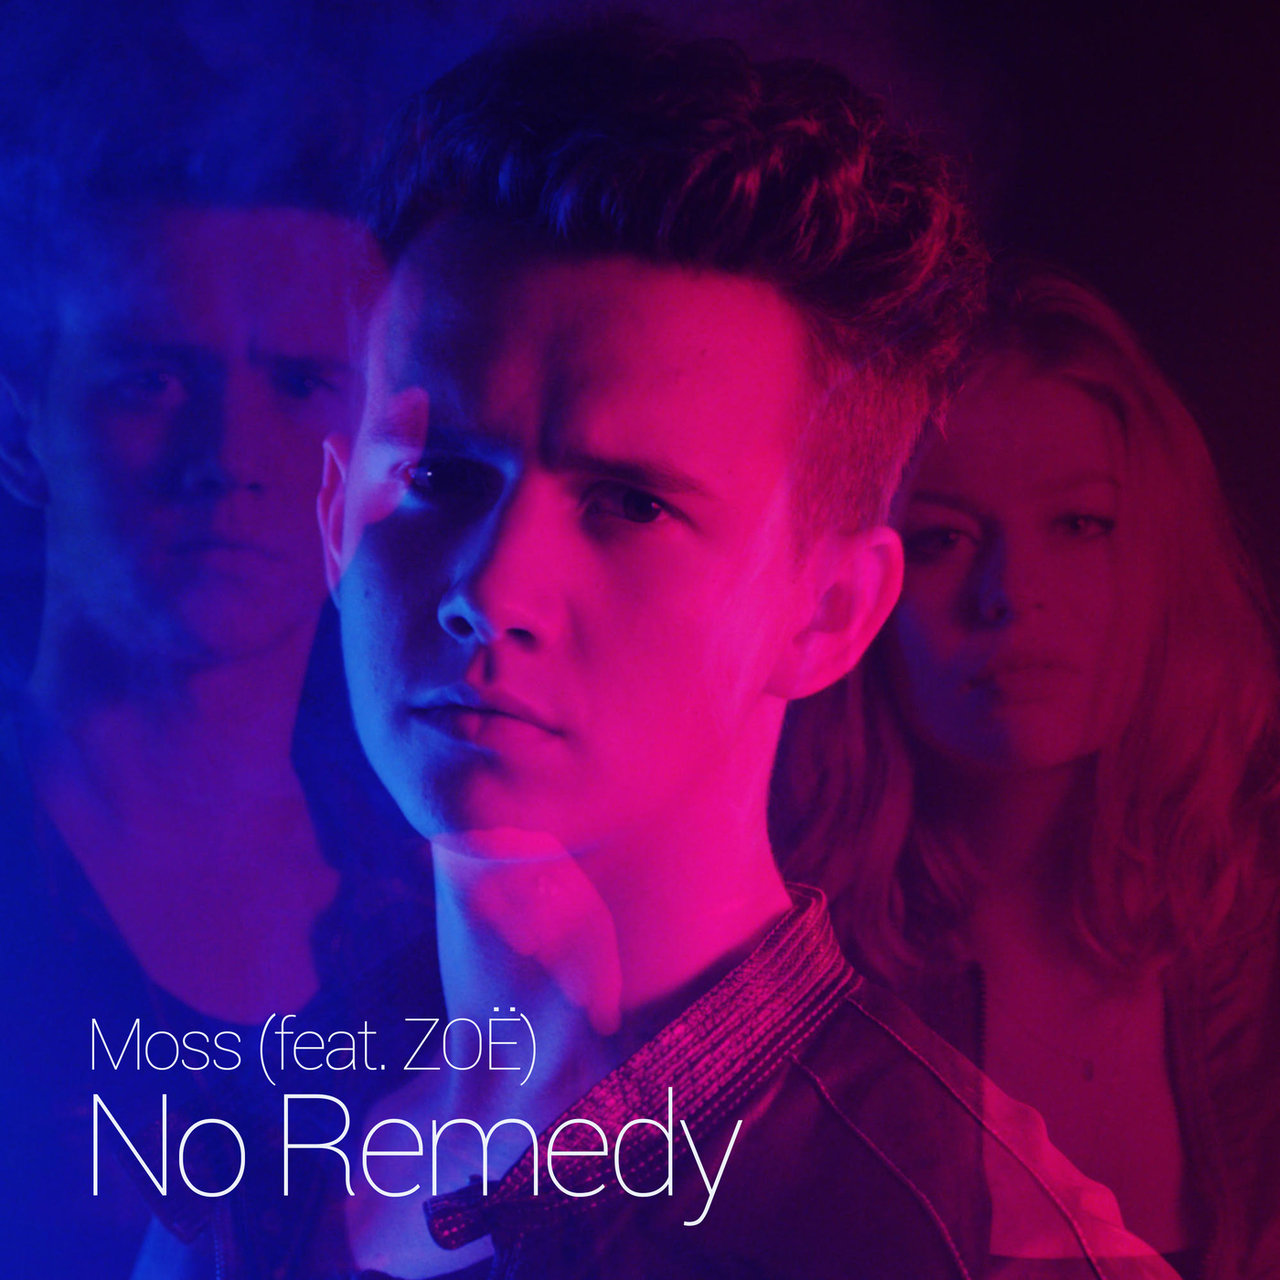 Moss featuring ZOË — No Remedy cover artwork